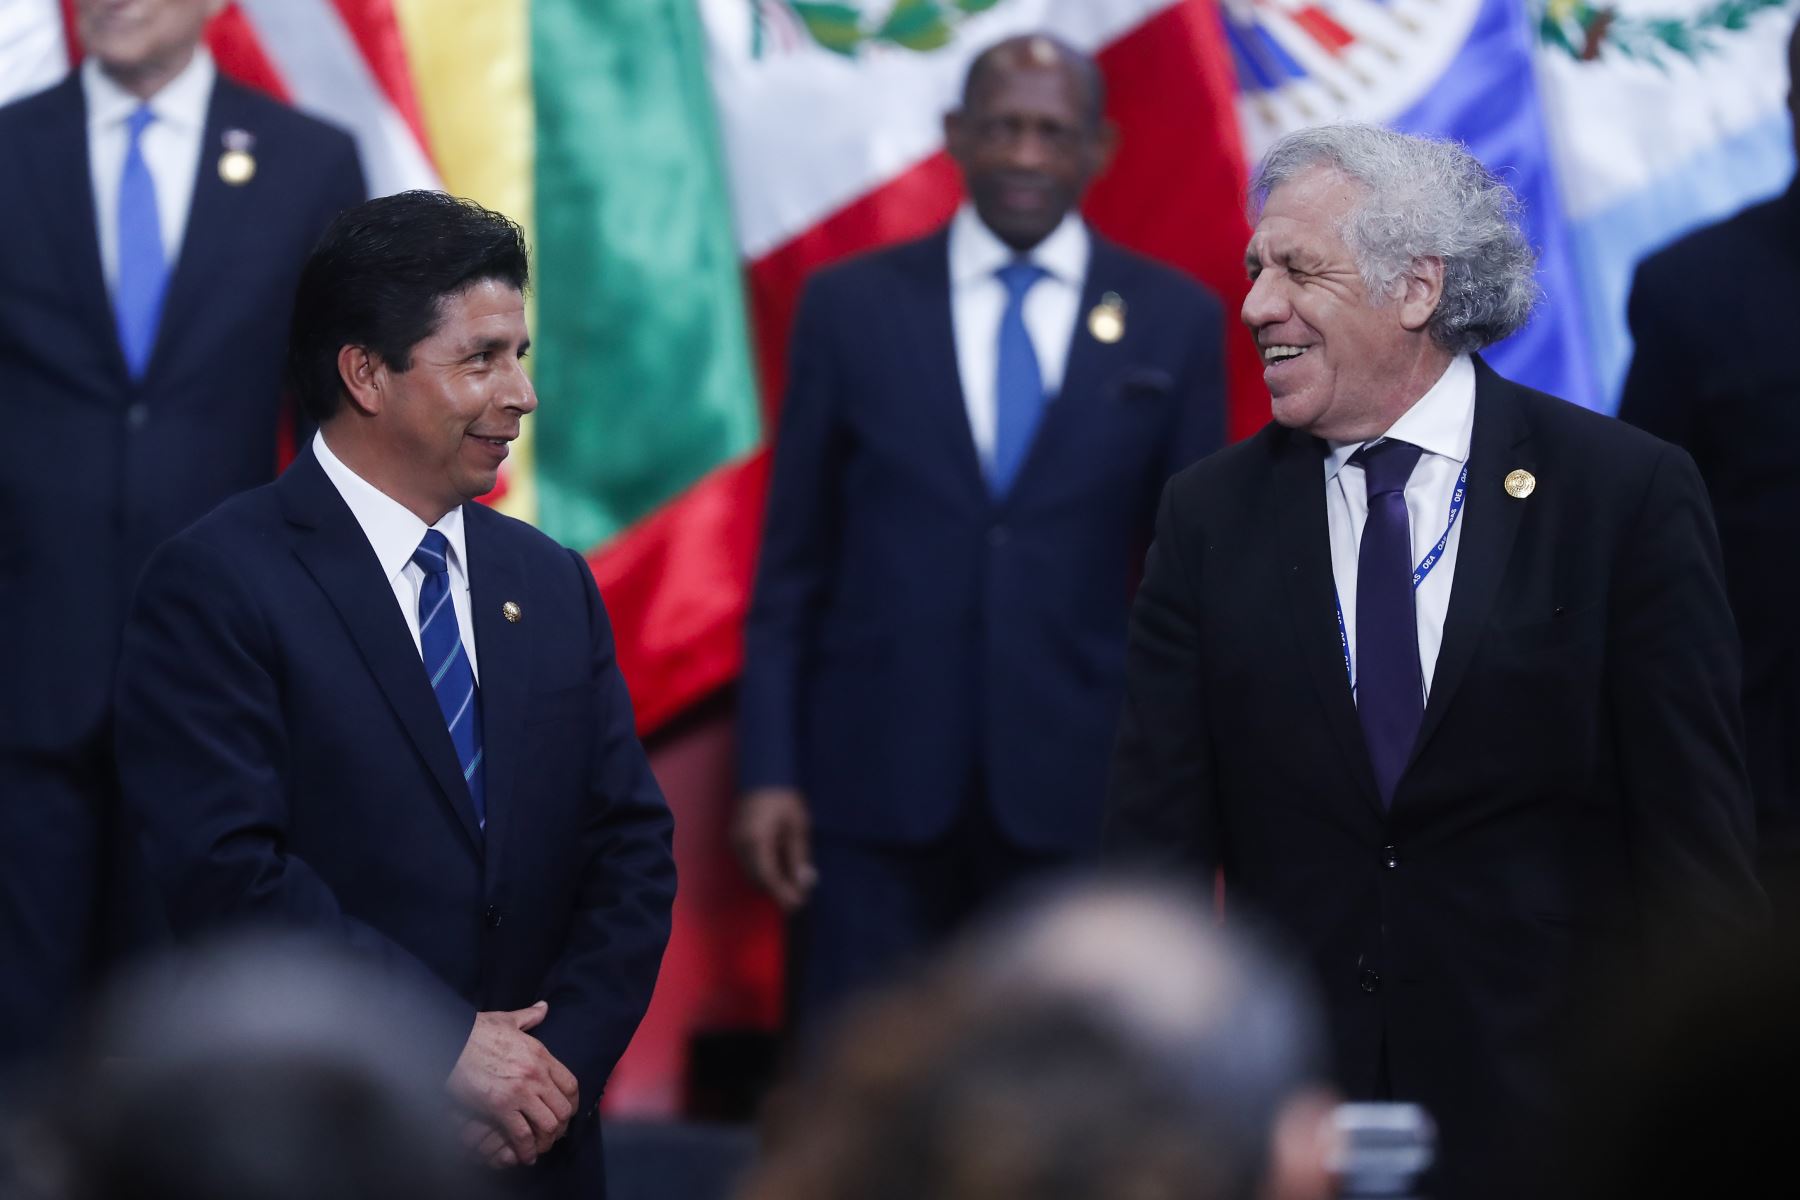 Fotografía de Pedro Castillo y Luis Almagro sonriéndose mutuamente durante la Asamblea General de la OEA en Lima.